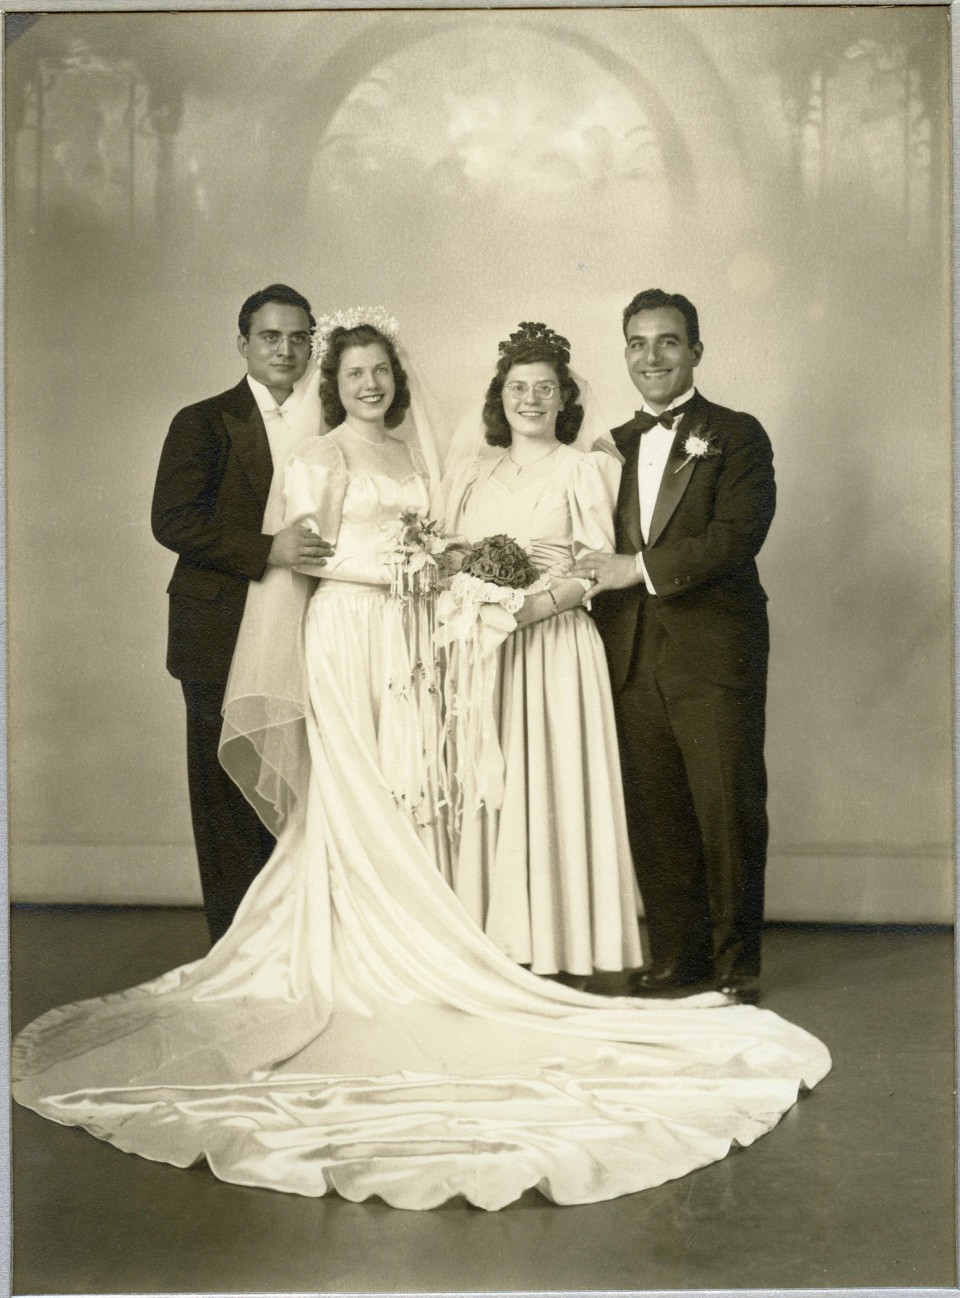 My Paternal Nonna Filomena Cornacchia on her Wedding Day in 1942.  Also in the photo are Antonio Maringola, Virginia Puzzo, and Alfredo Maringola.  The Maringolas were from Corigliano Calabro, Calabria and the Cornacchia's from Monteleone di puglia/Mercogliano, avellino.